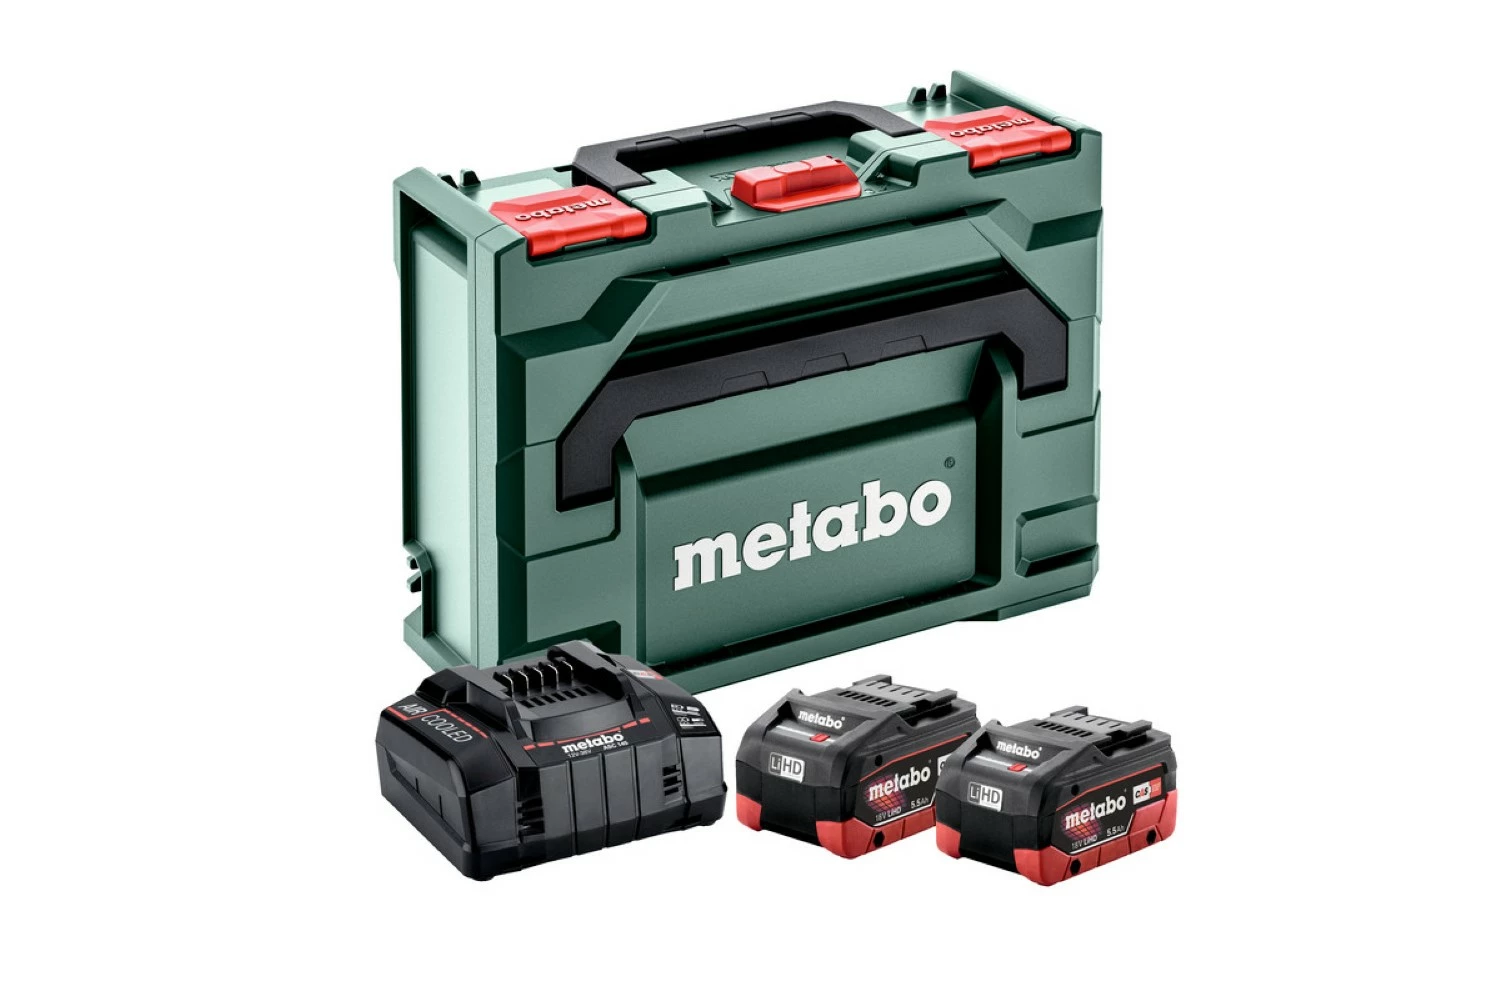 Metabo 685077000 18V LiHD accu starterset (2x 5.5Ah) + lader in MetaBox-image